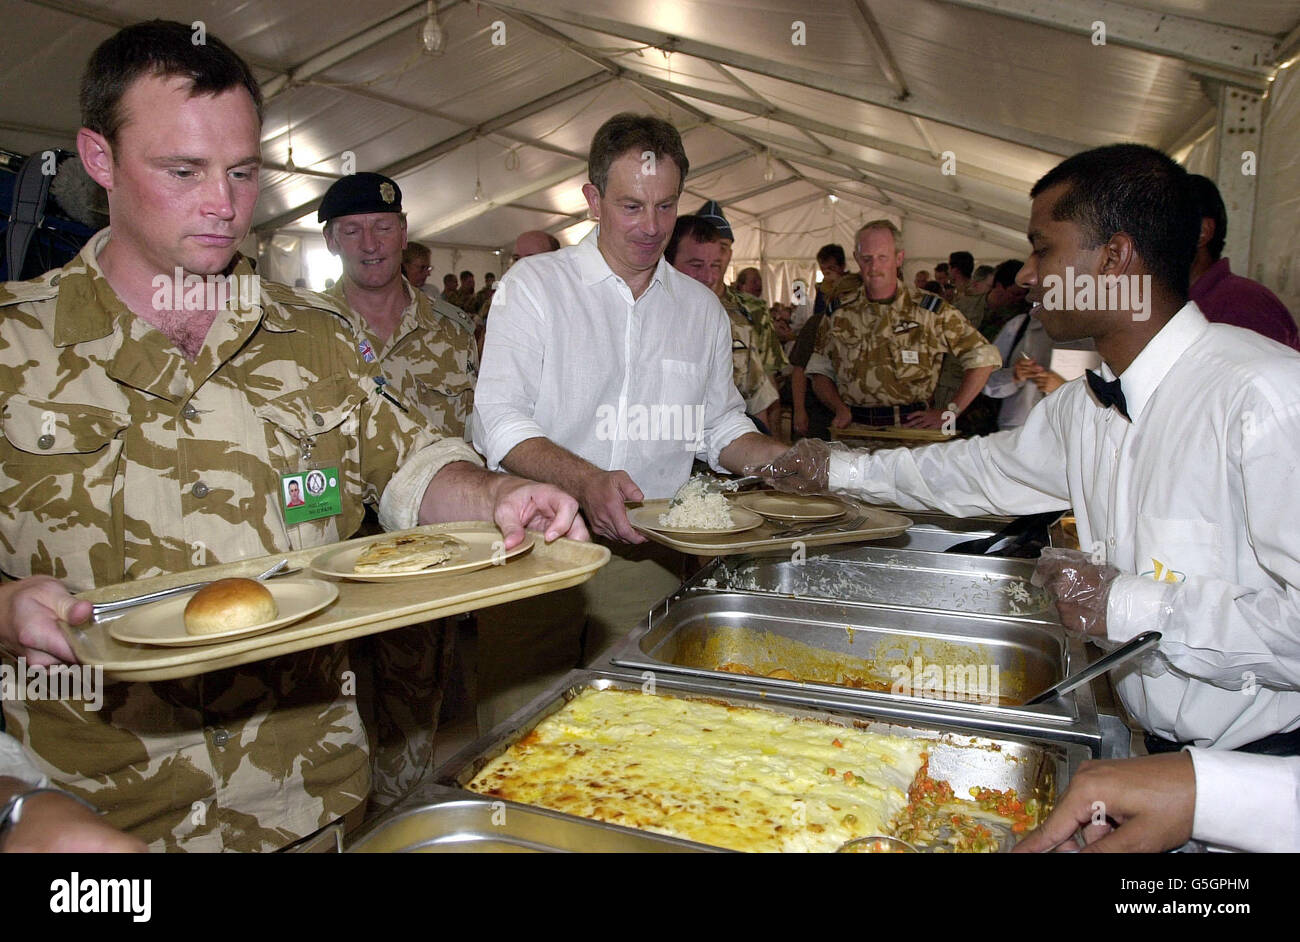 Le Premier ministre britannique Tony Blair rend visite aux troupes britanniques en cours d'exercice à Oman. M. Blair s'est joint aux troupes dans un mess de fortune pour un déjeuner de curry, de riz et de pois lors d'une visite de la base Al Sha'afa, le centre de commandement de l'opération Swift Sword II *, impliquant plus de 20,000 militaires britanniques dans le plus grand déploiement depuis la guerre du Golfe. Banque D'Images